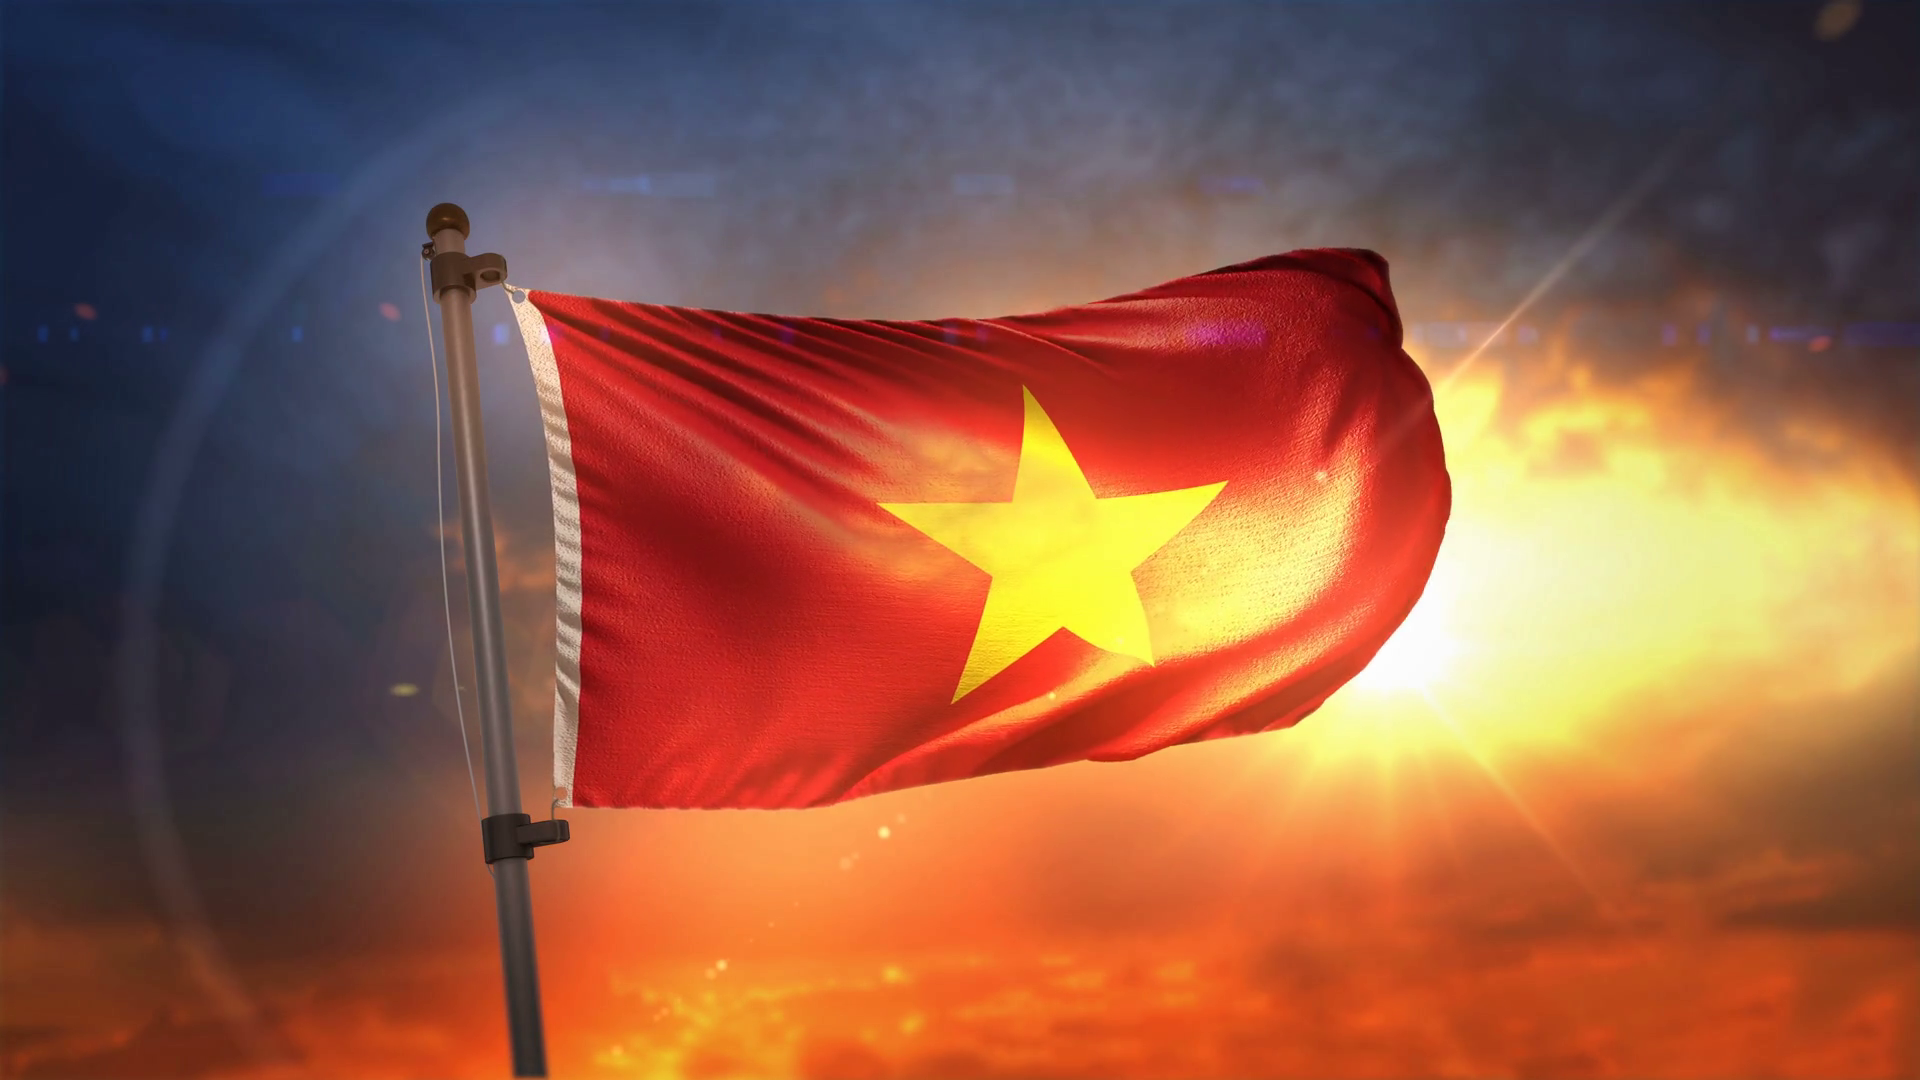 Cờ Việt Nam: Cờ Việt Nam - biểu tượng của quốc gia chúng ta. Hãy xem qua ảnh để cảm nhận sức mạnh, lòng tự hào và tình yêu đất nước cùng anh hùng dân tộc Việt Nam.